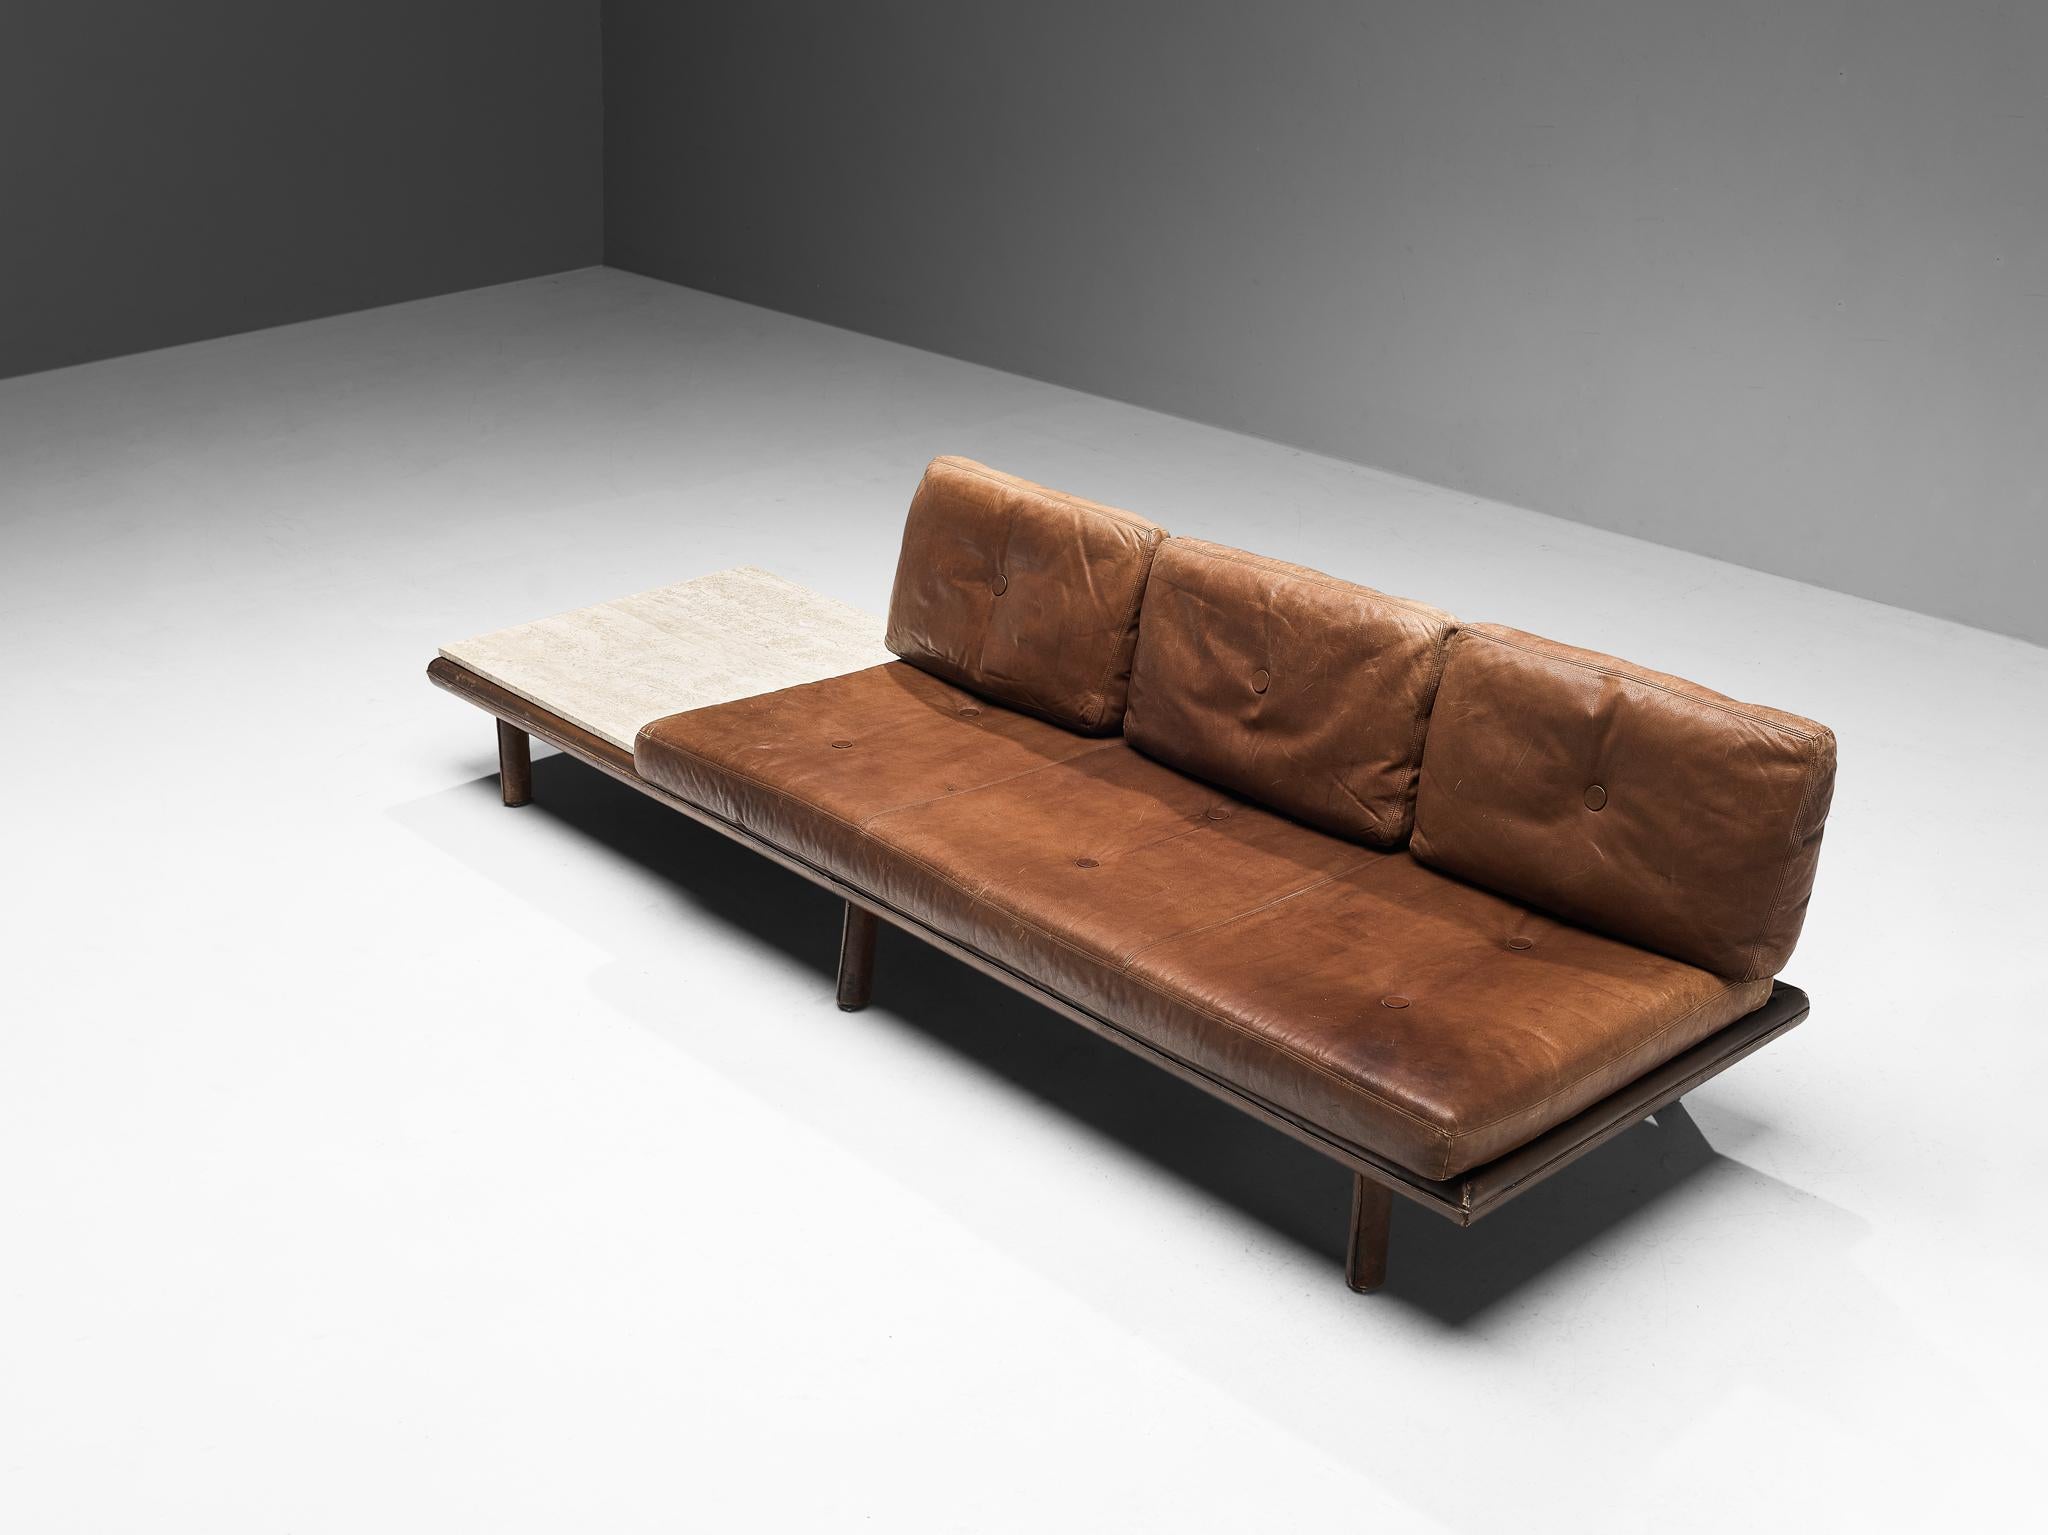 Franz Köttgen pour Kill International, canapé-lit modèle '6603', travertin, cuir, bois, métal, Allemagne, années 1960 

Un canapé très polyvalent puisqu'il peut se transformer en lit de jour. La table d'appoint en travertin, qui fait partie de